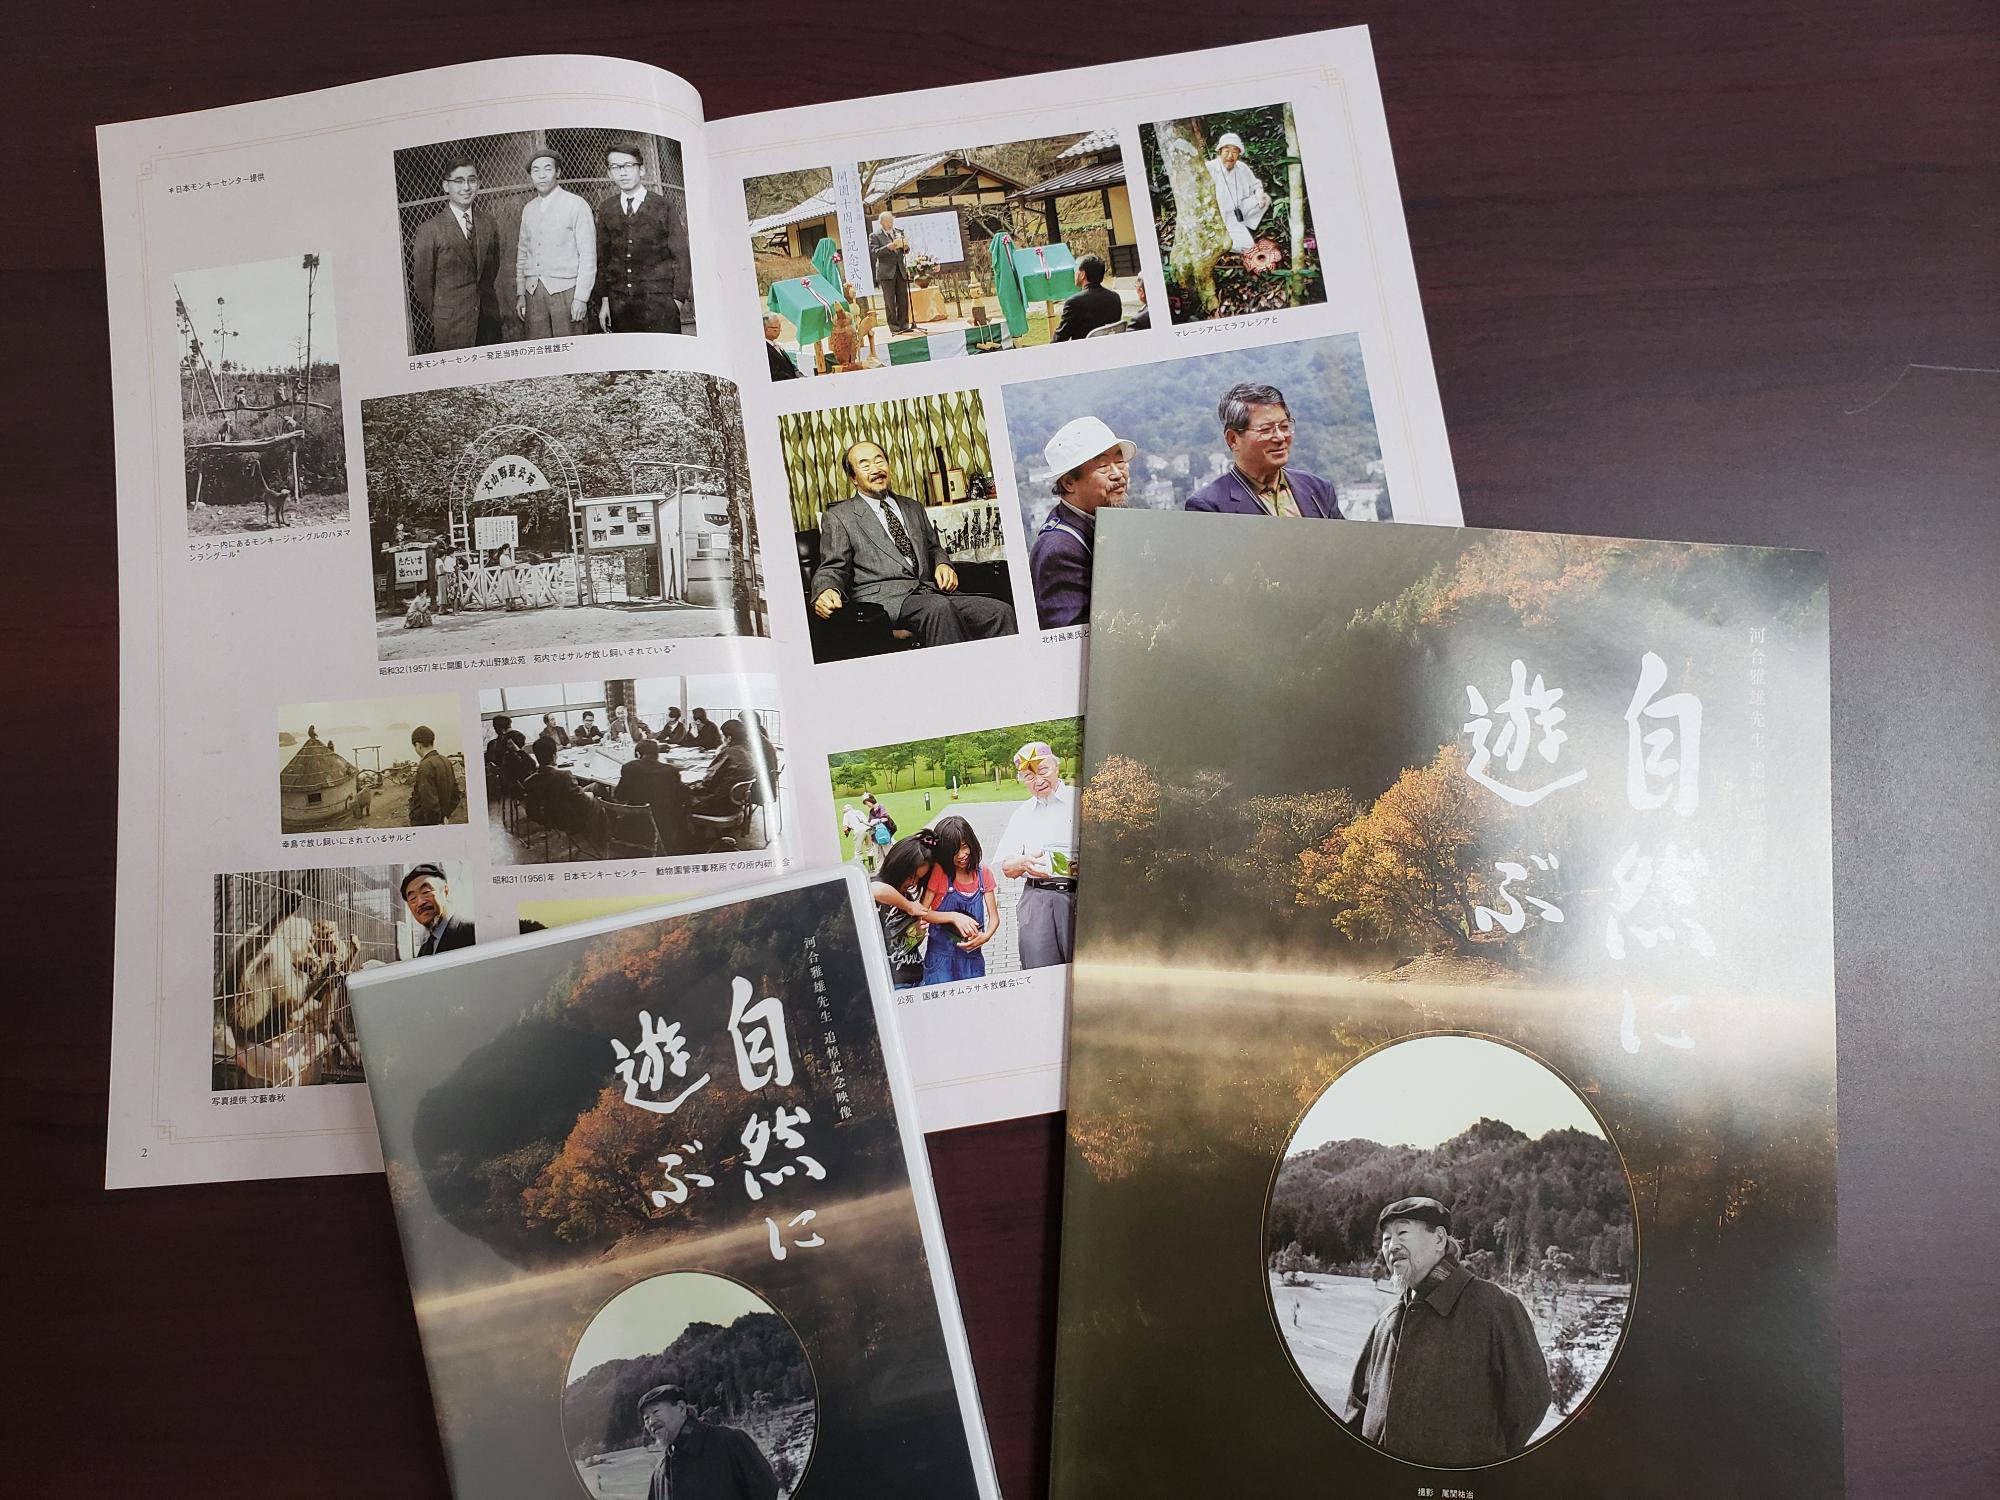 河合雅雄先生の追悼映像DVDと追悼記念誌の表紙と写真が掲載されているページが開いて机に置いてある